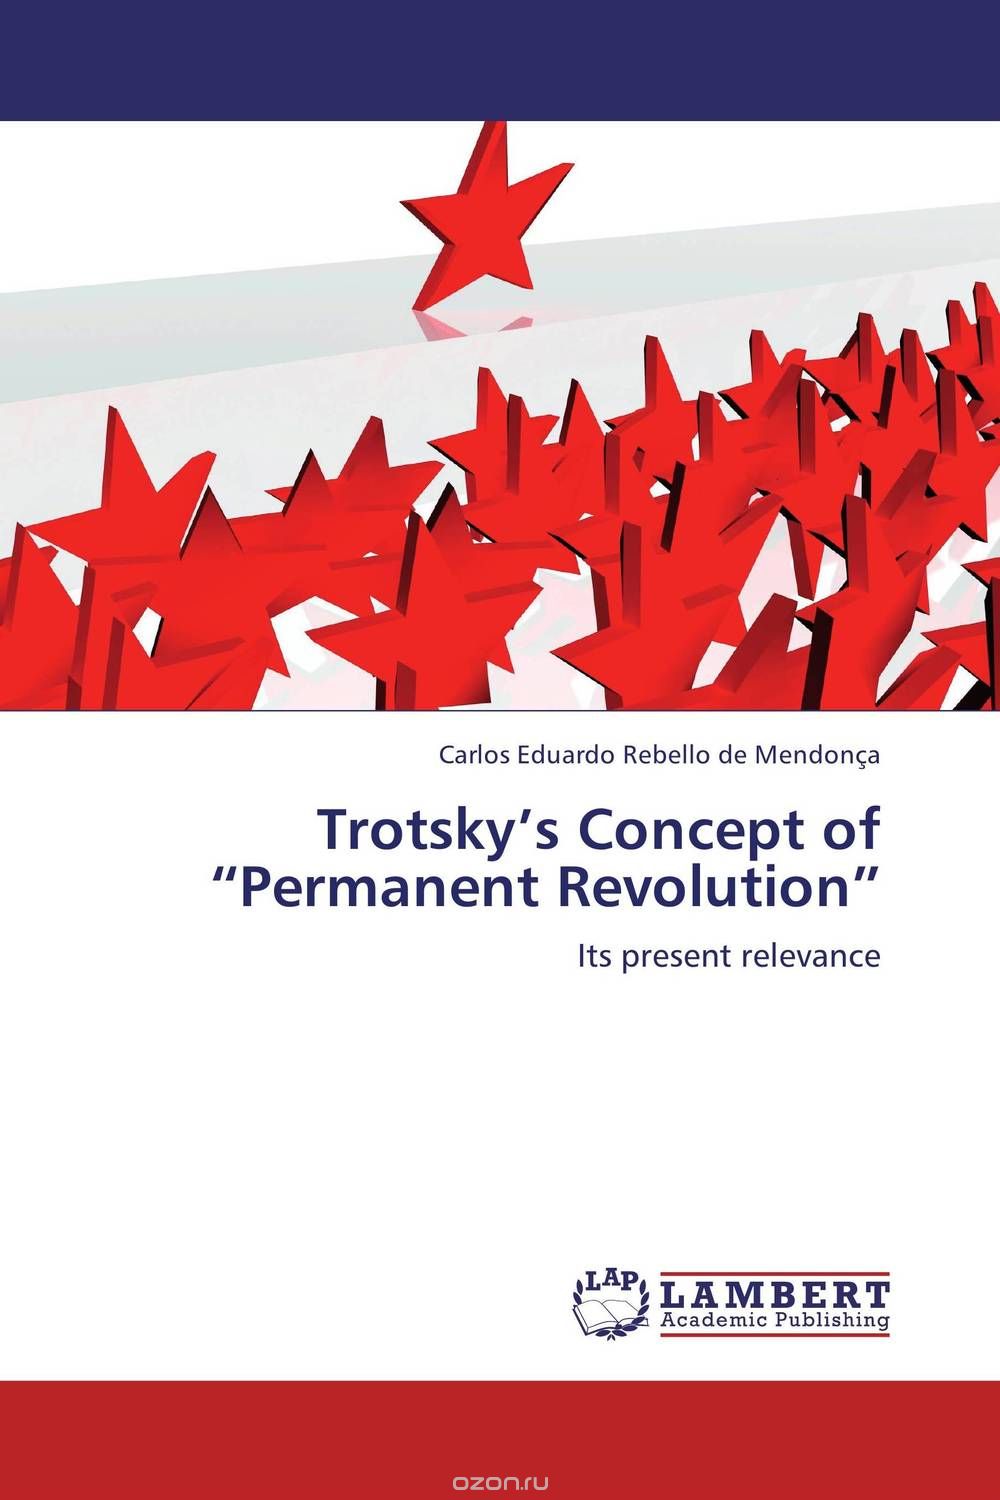 Скачать книгу "Trotsky’s Concept of “Permanent Revolution”"